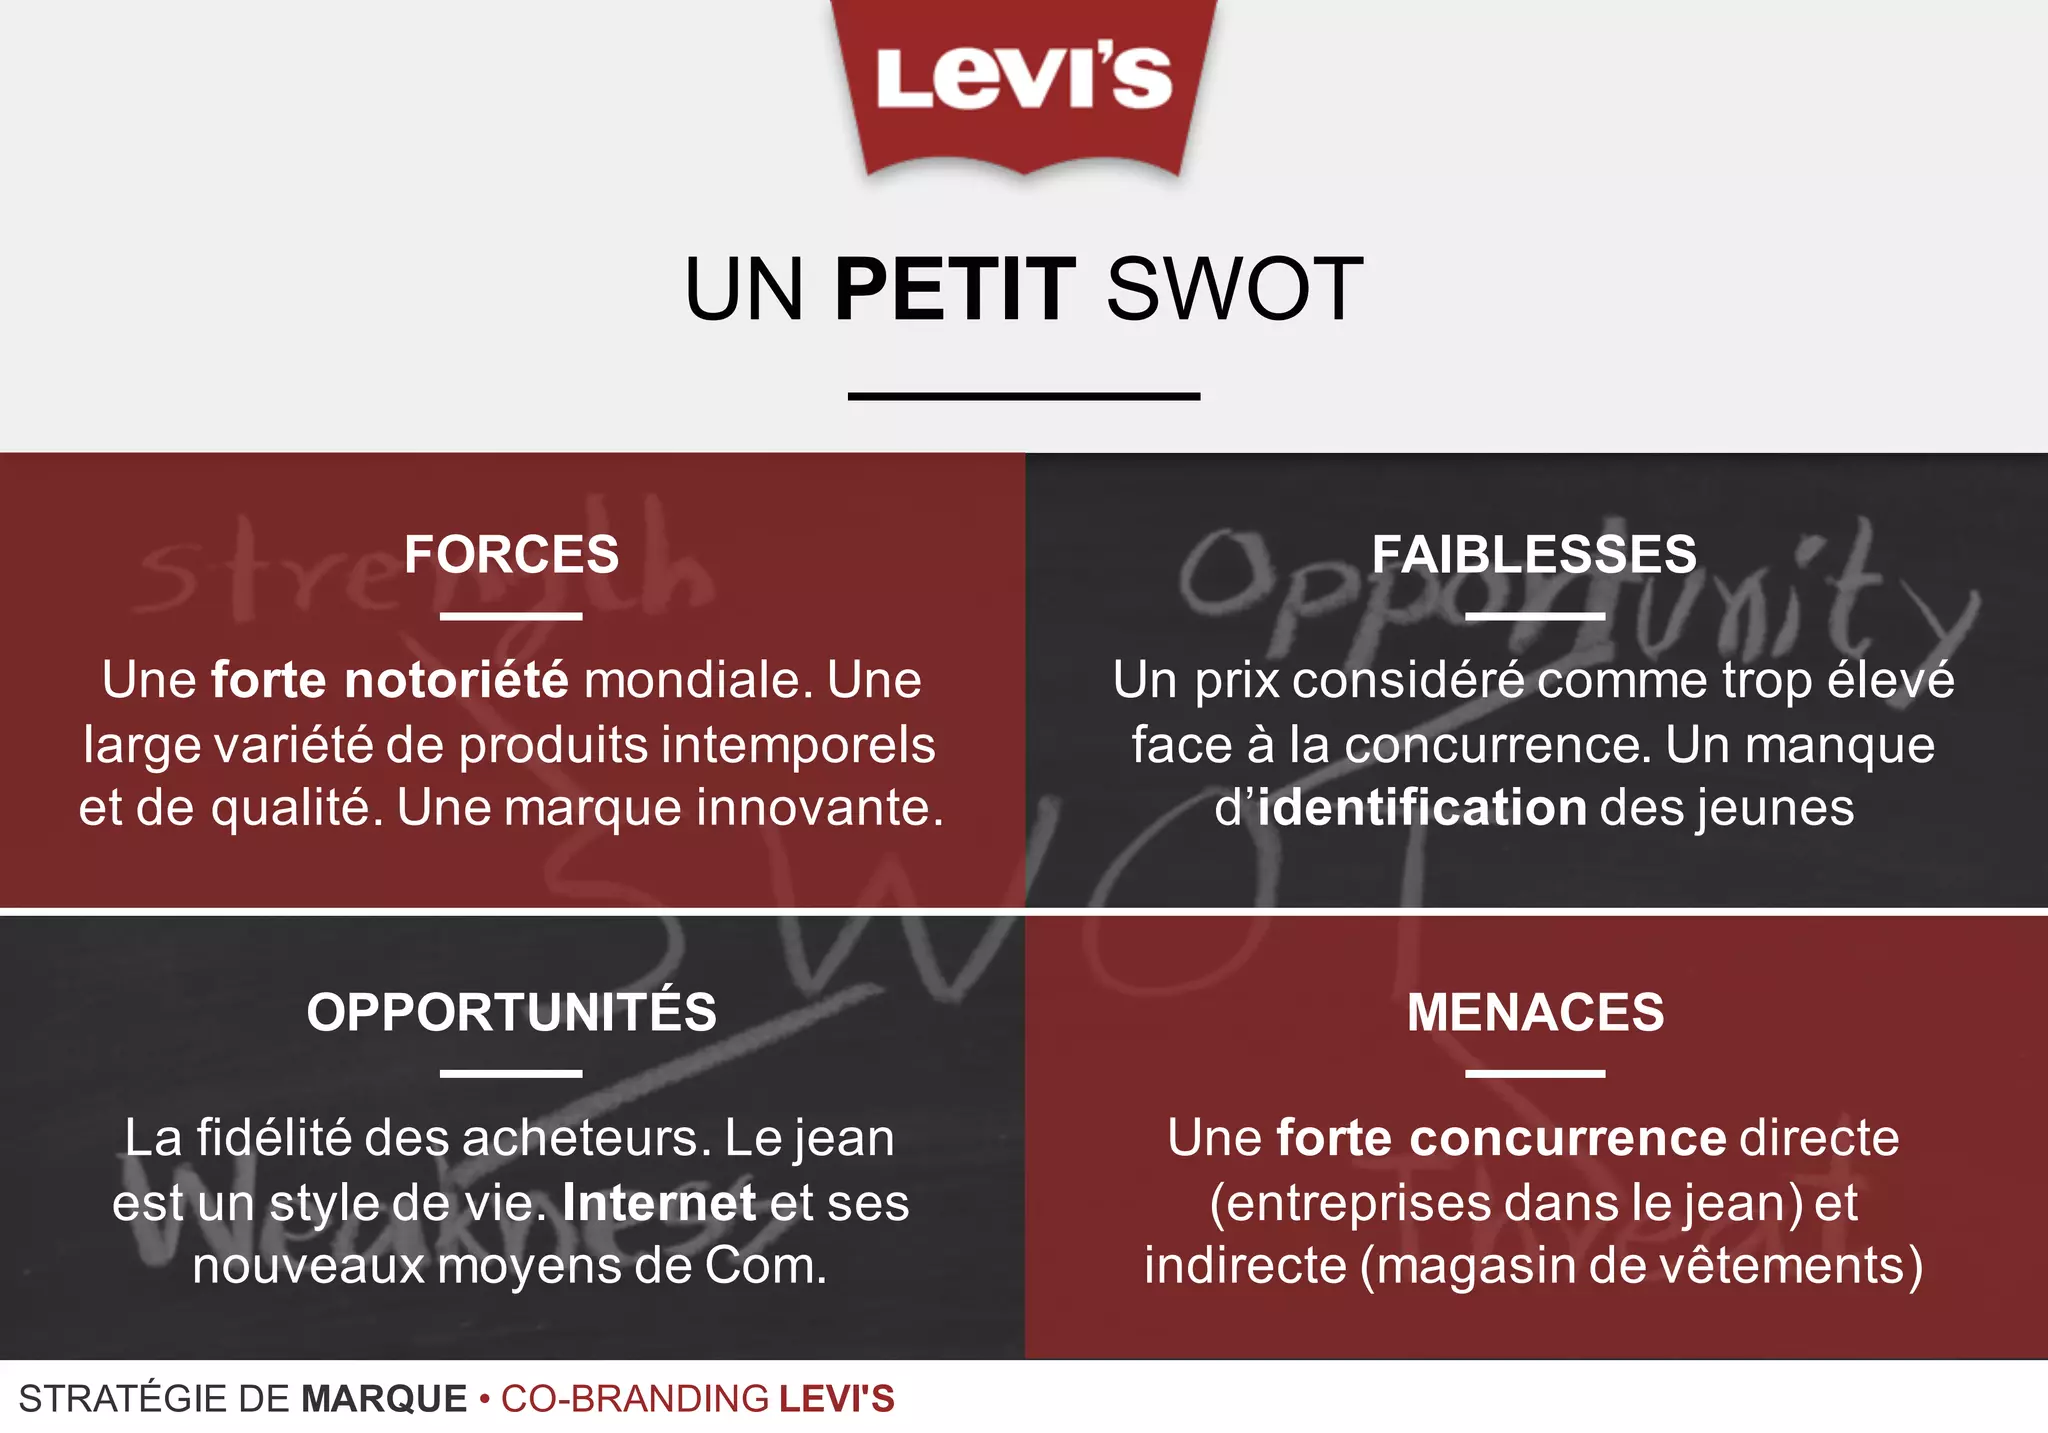 Co-branding - Levi's